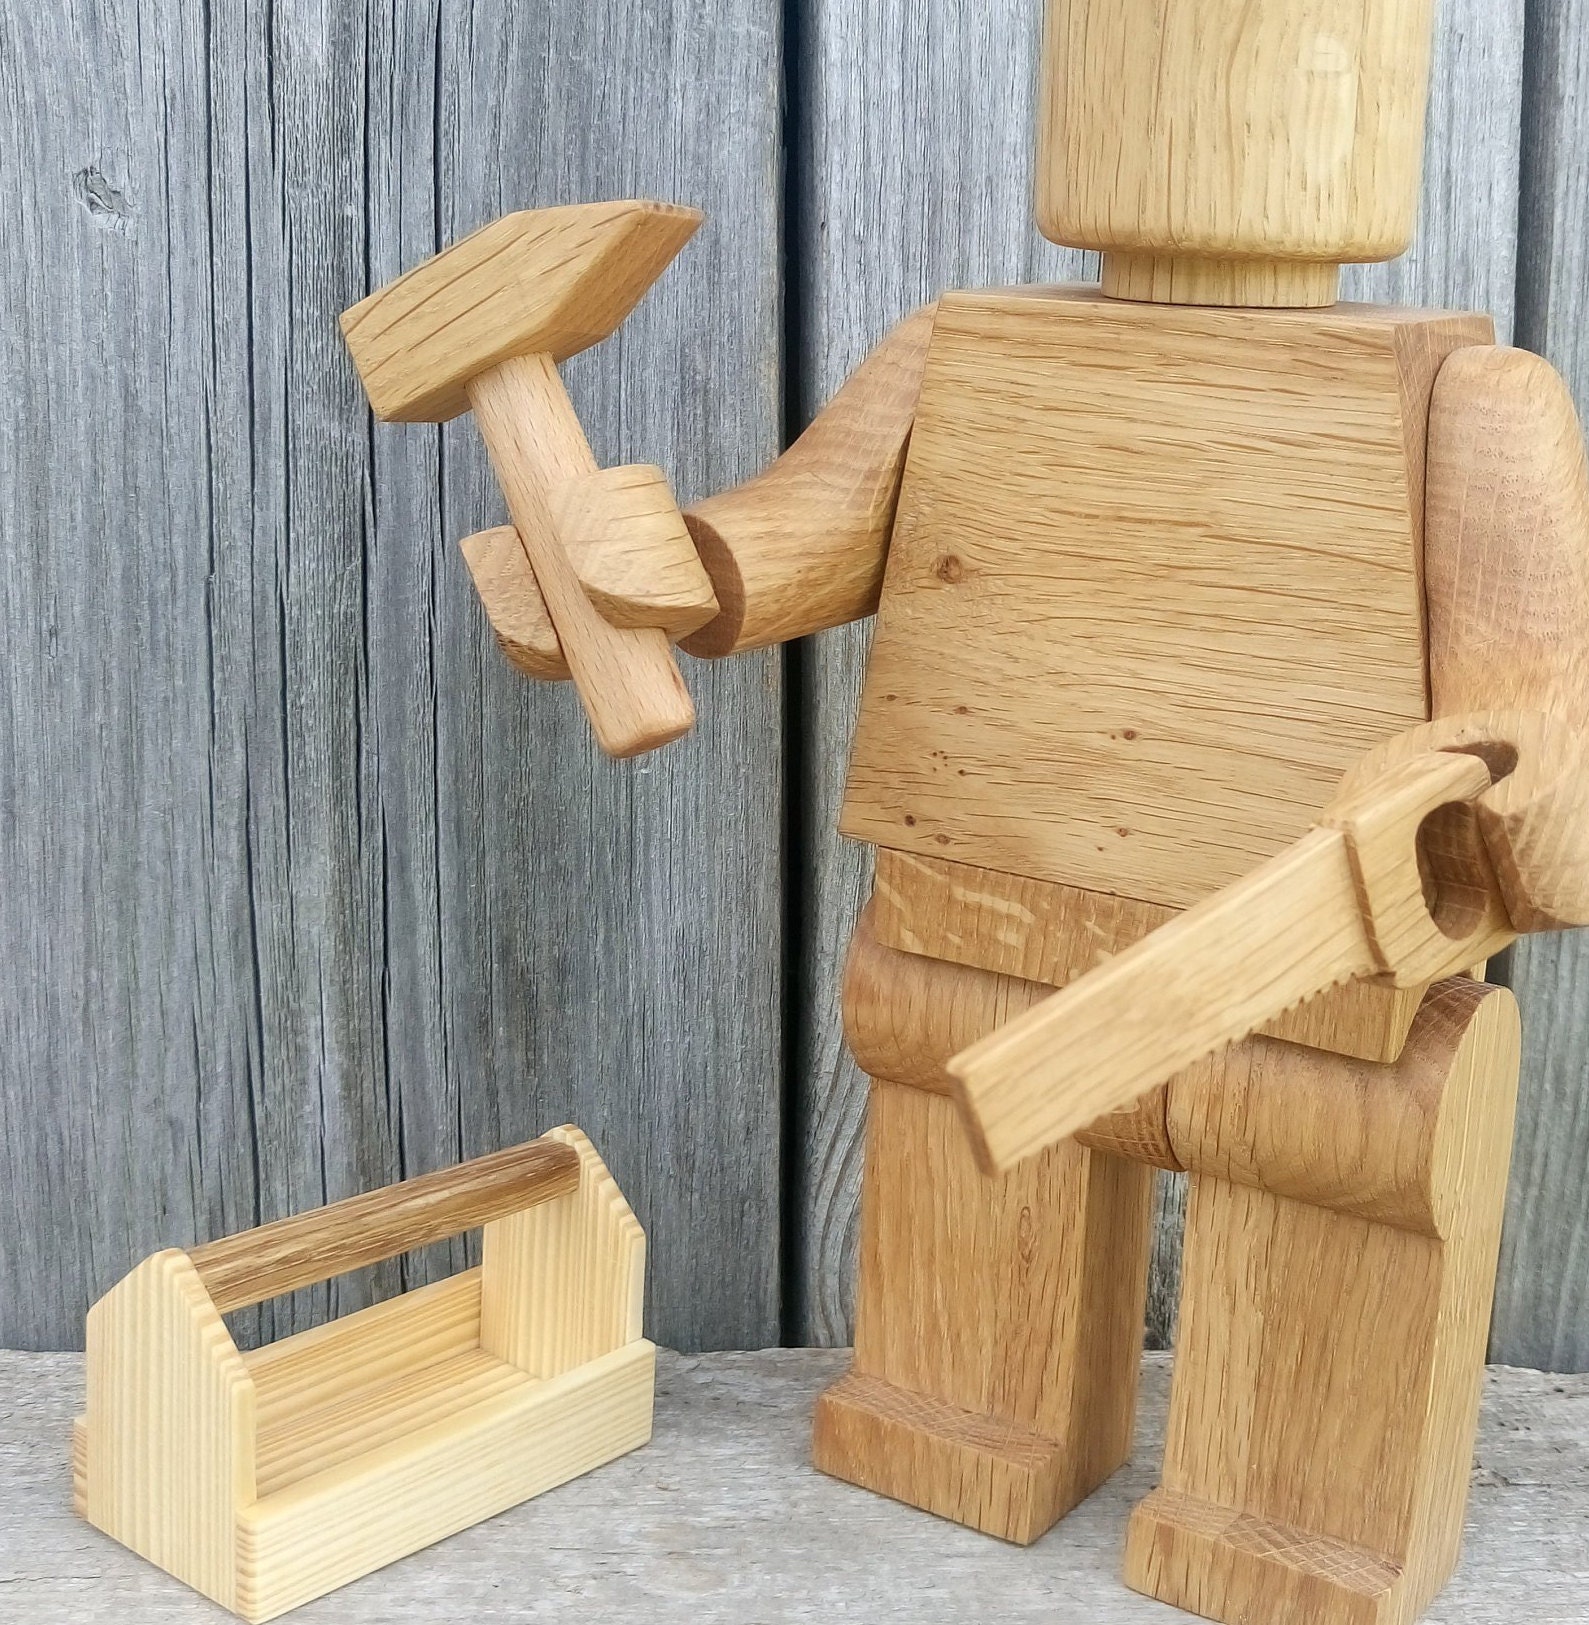 mandig Følge efter Langt væk Wooden Instruments Christmas Kids Gifts Mini Instruments Set - Etsy Ireland